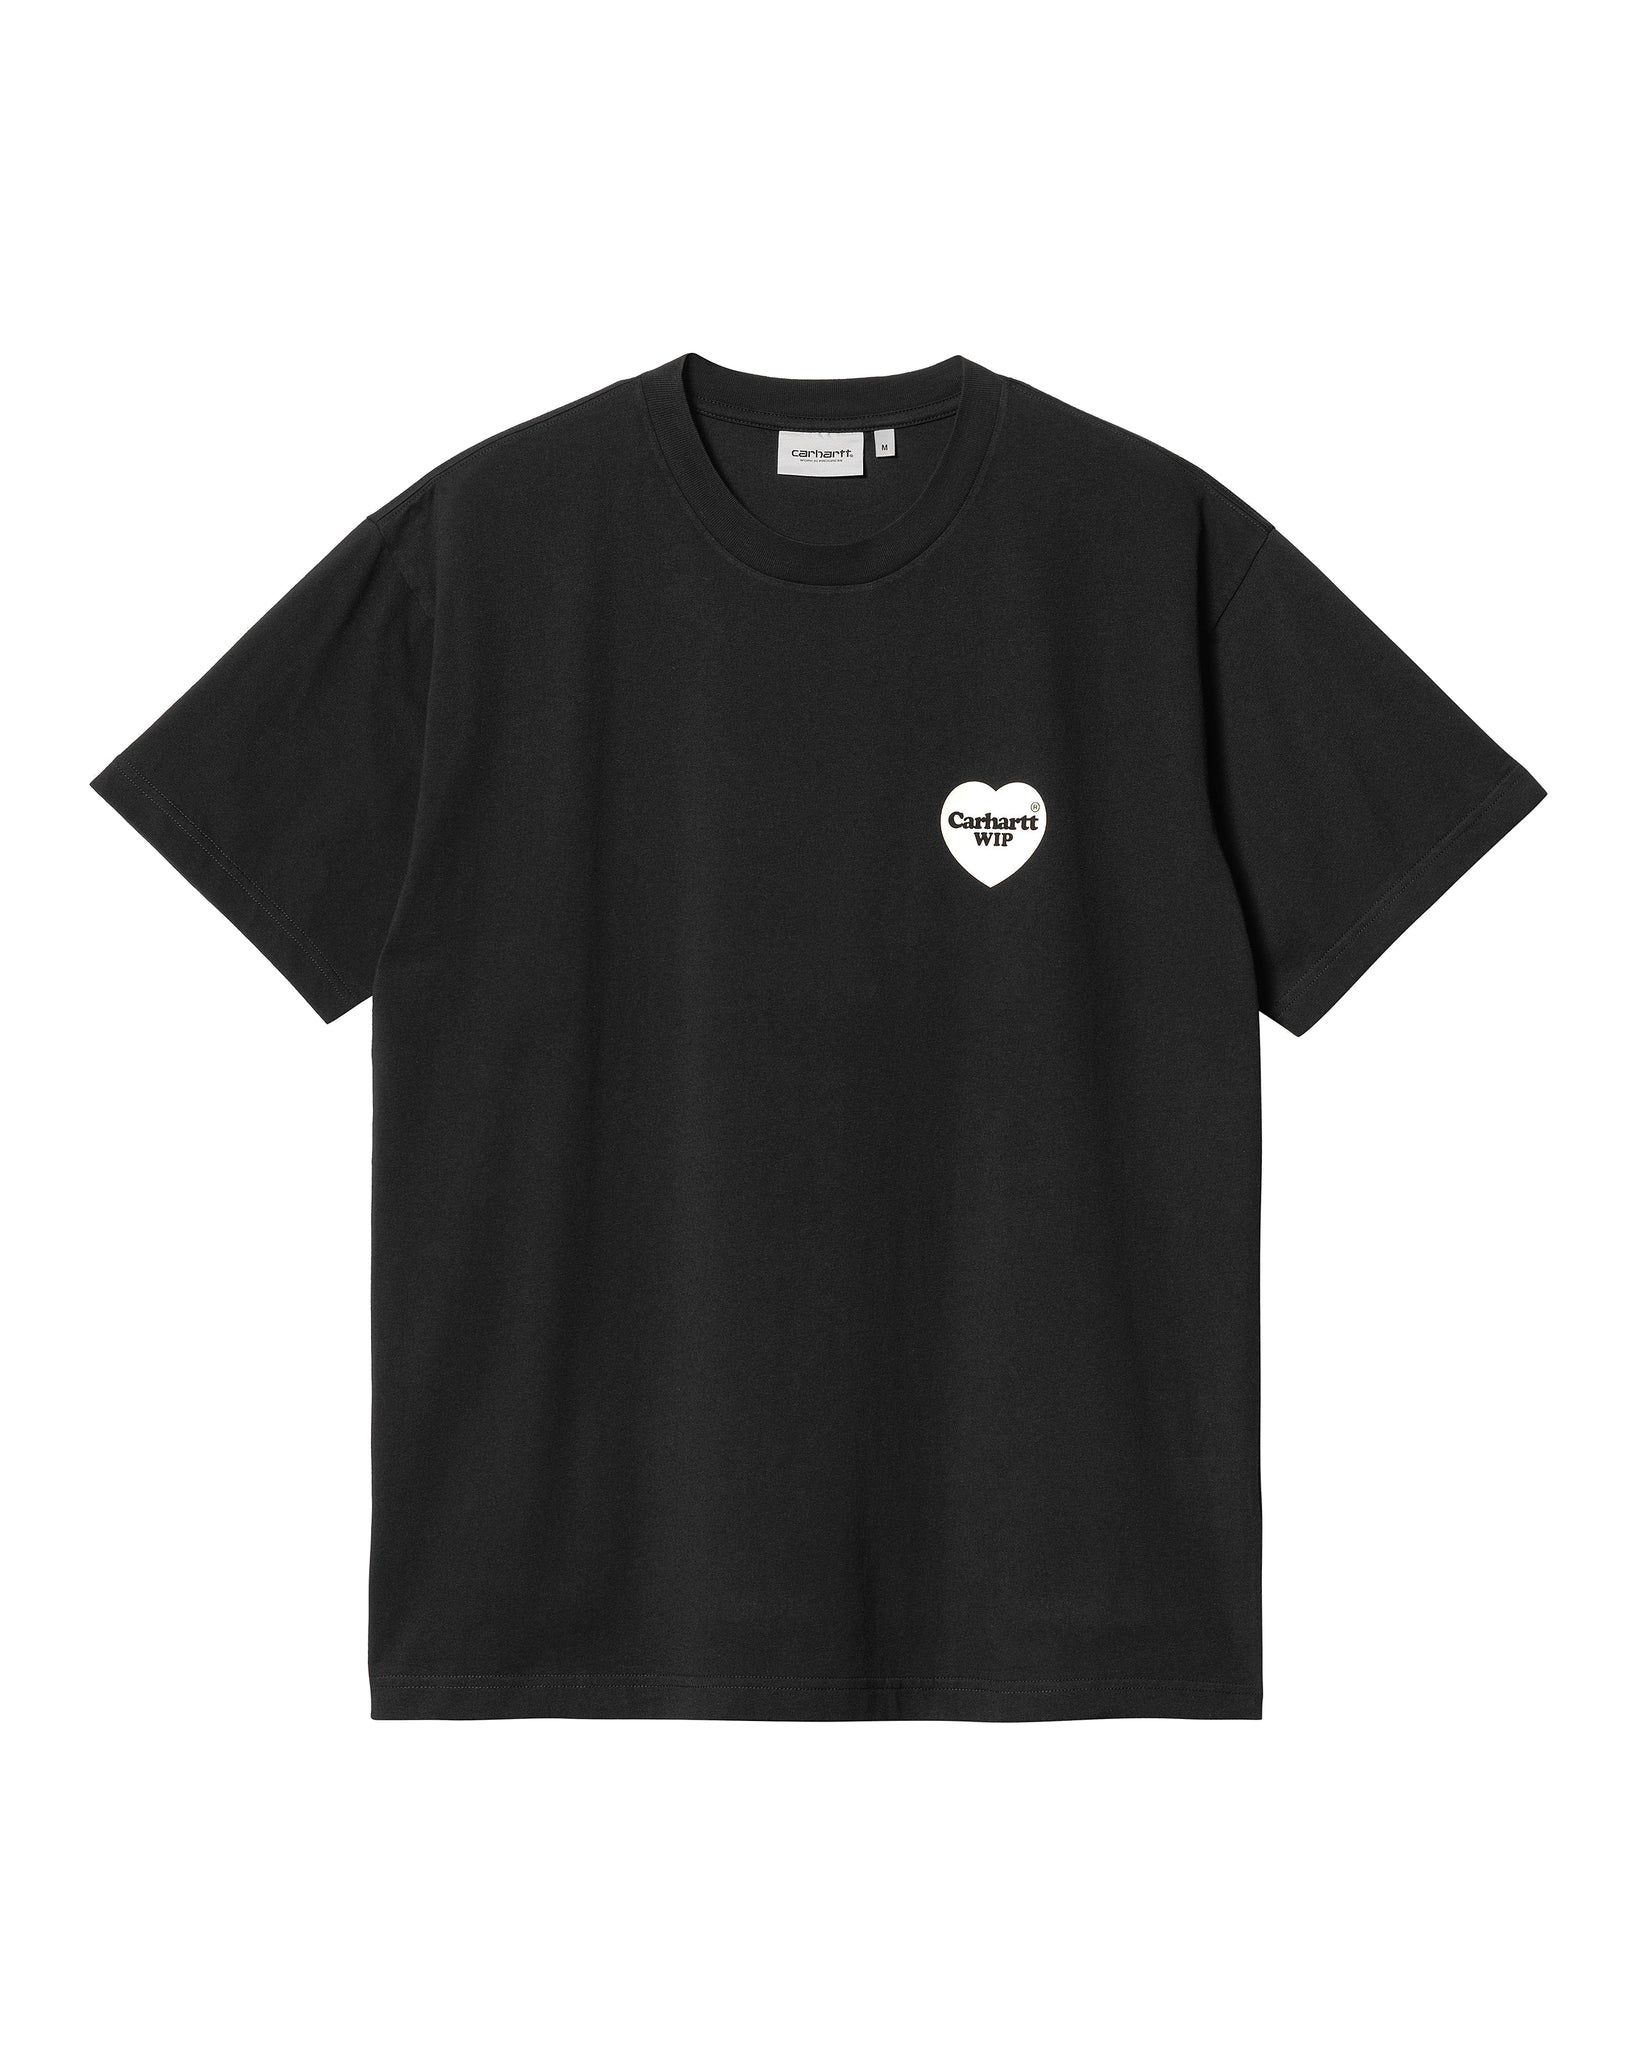 S/S Heart Bandana T-Shirt - Black/White (stone washed)